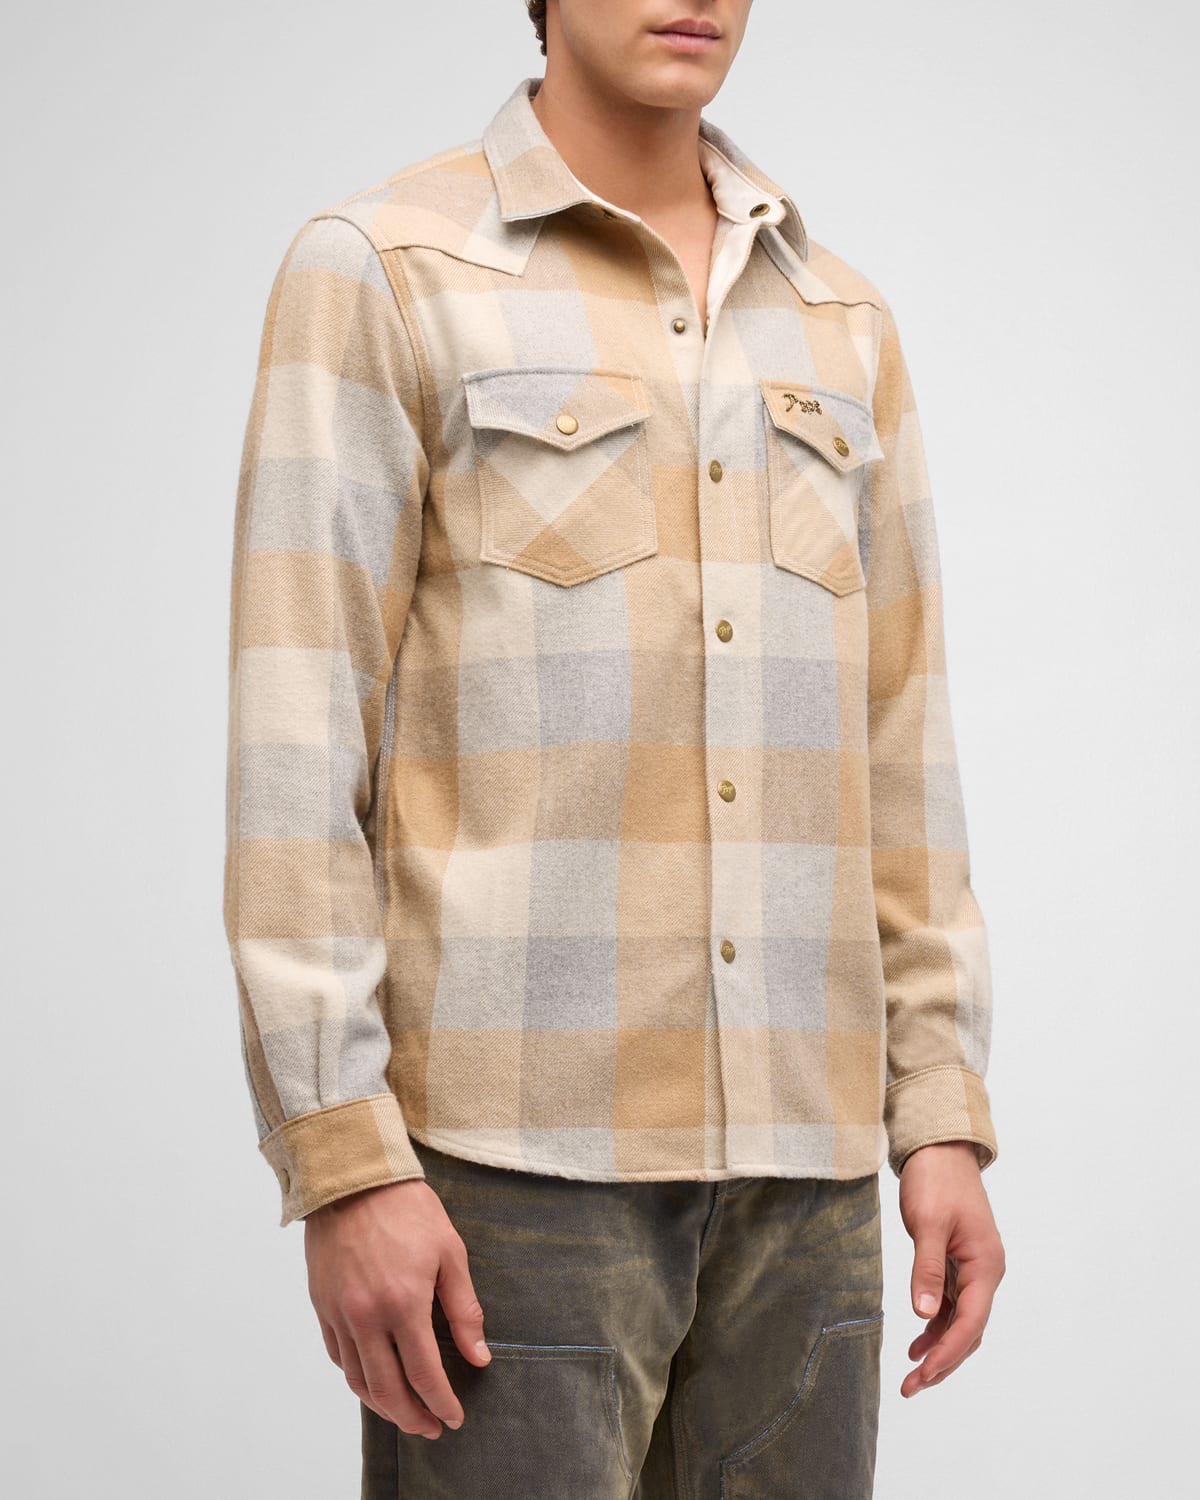 Men's Plaid Flannel Button-Down Shirt